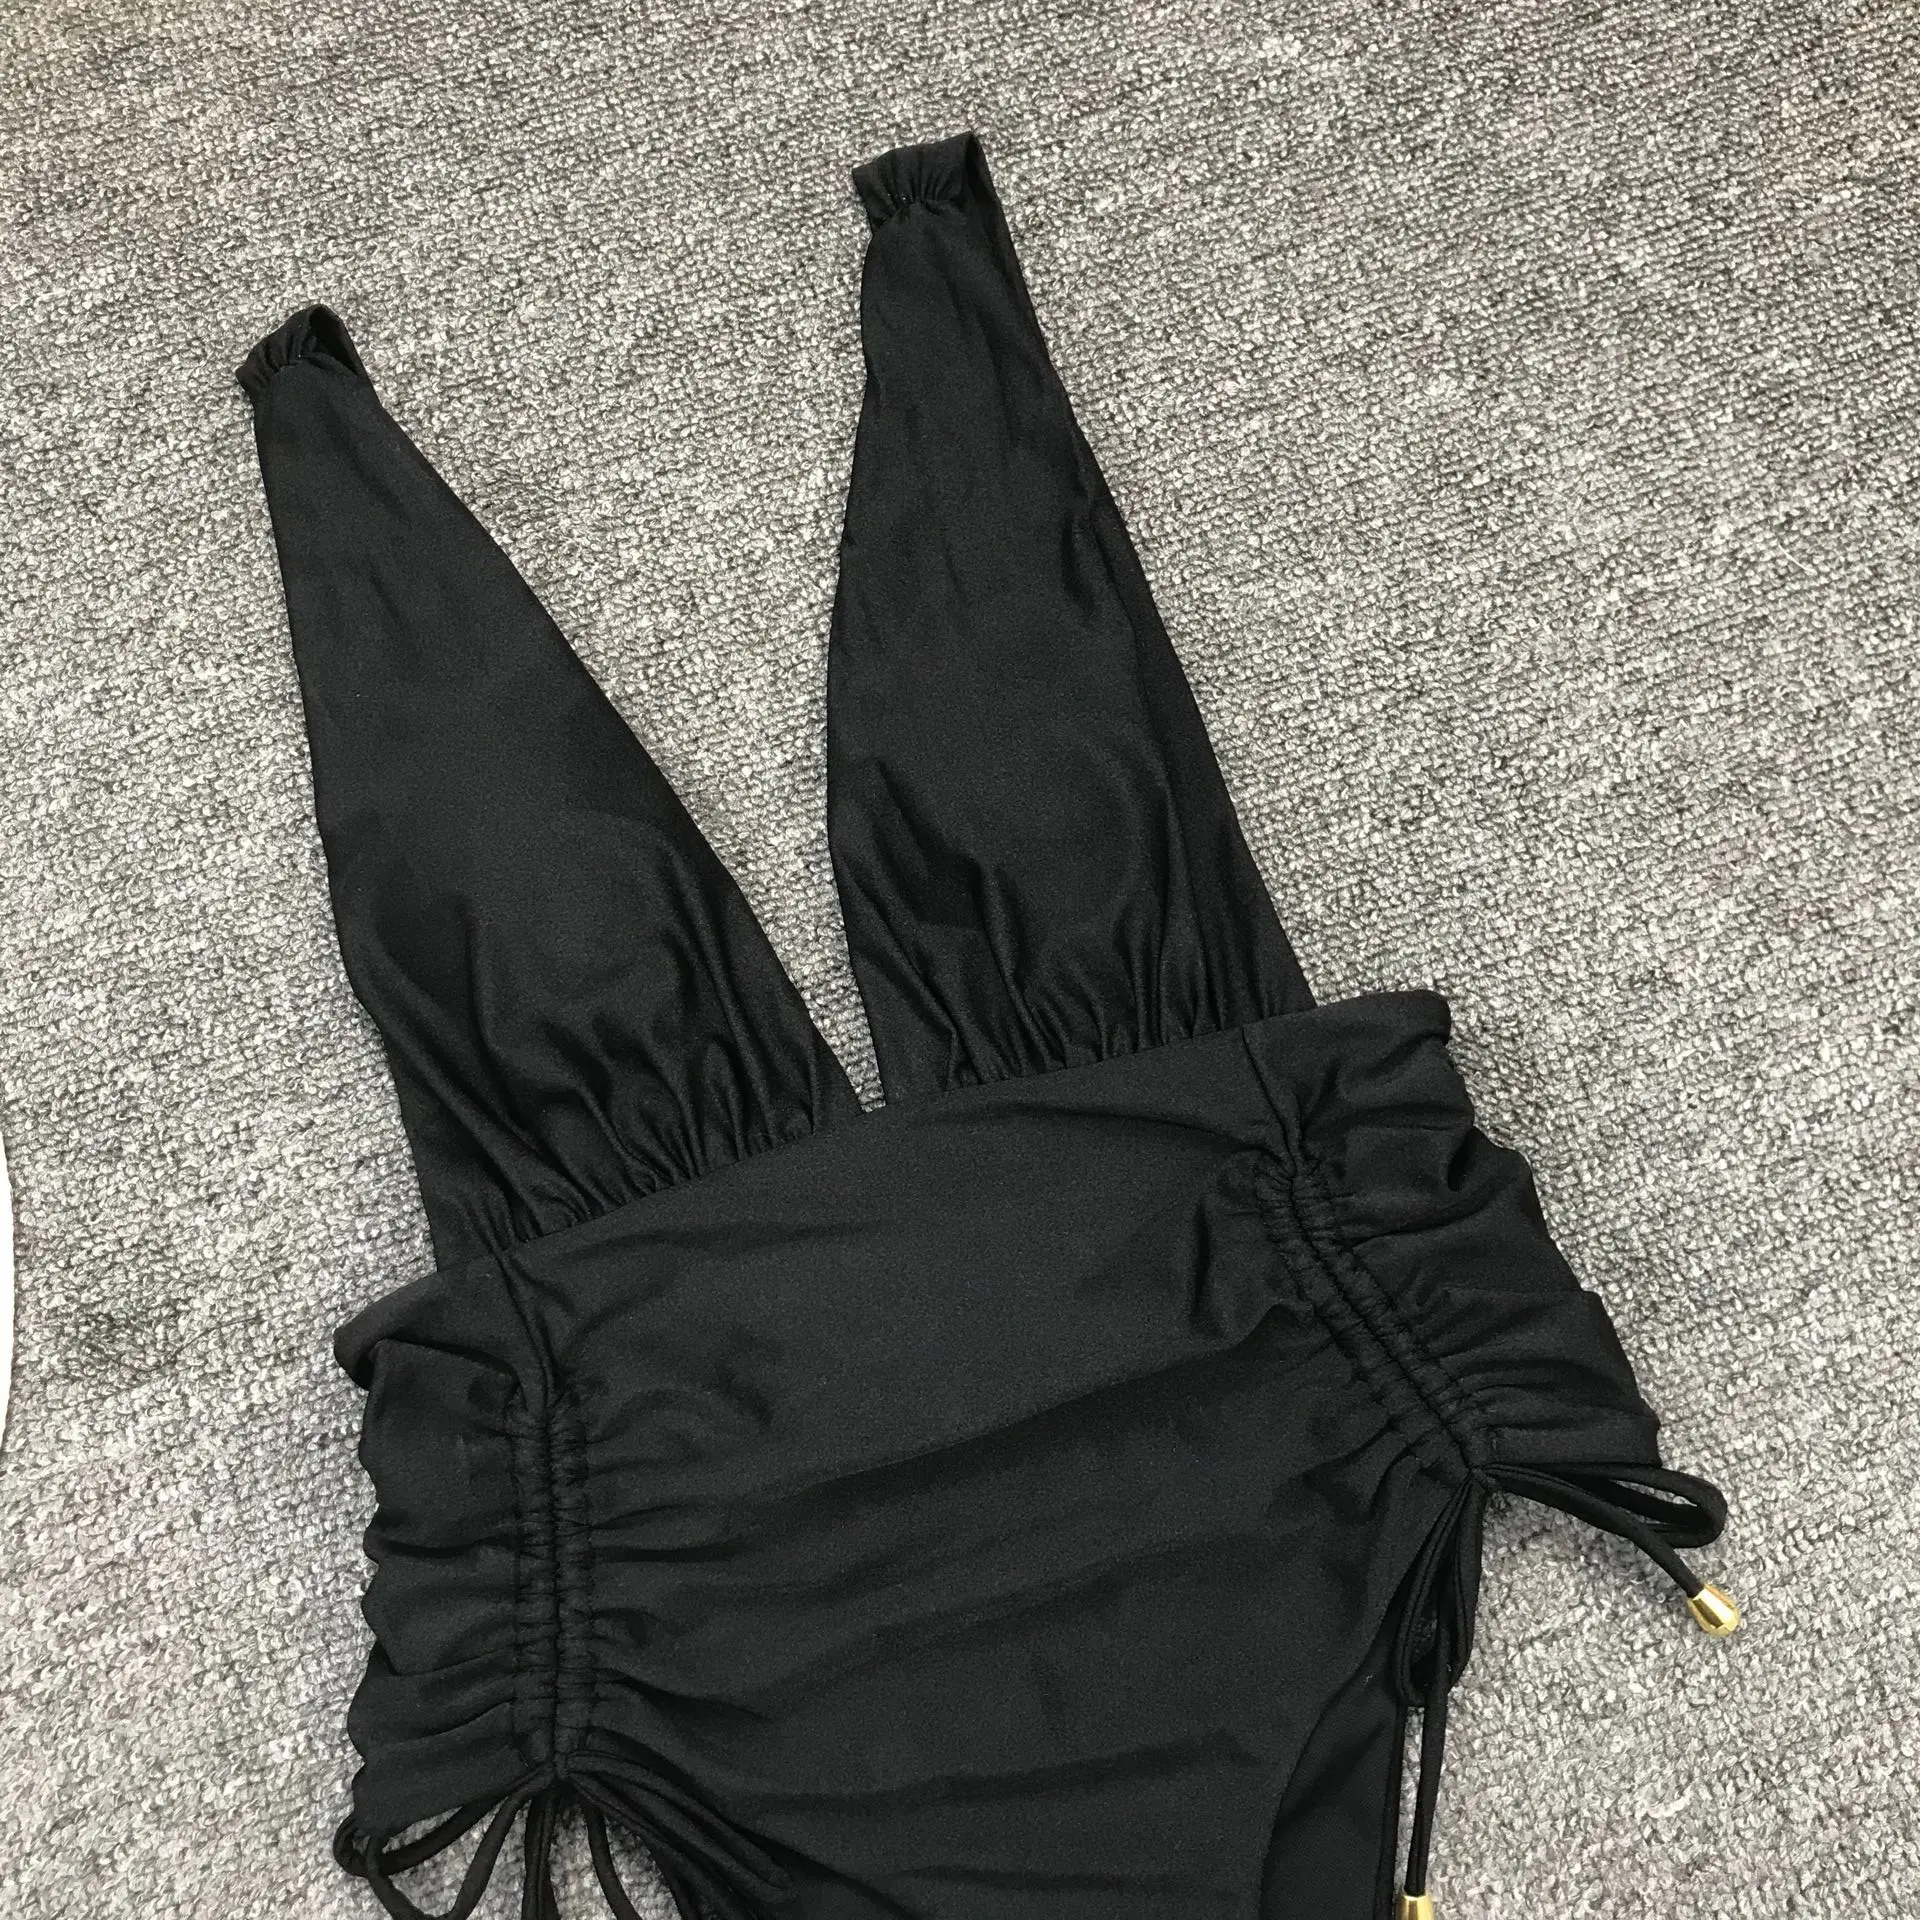 Цельный купальник женский однотонный черный купальный костюм боди с высоким вырезом сексуальный глубокий v-образный вырез купальник женский Монокини купальник на бретельках